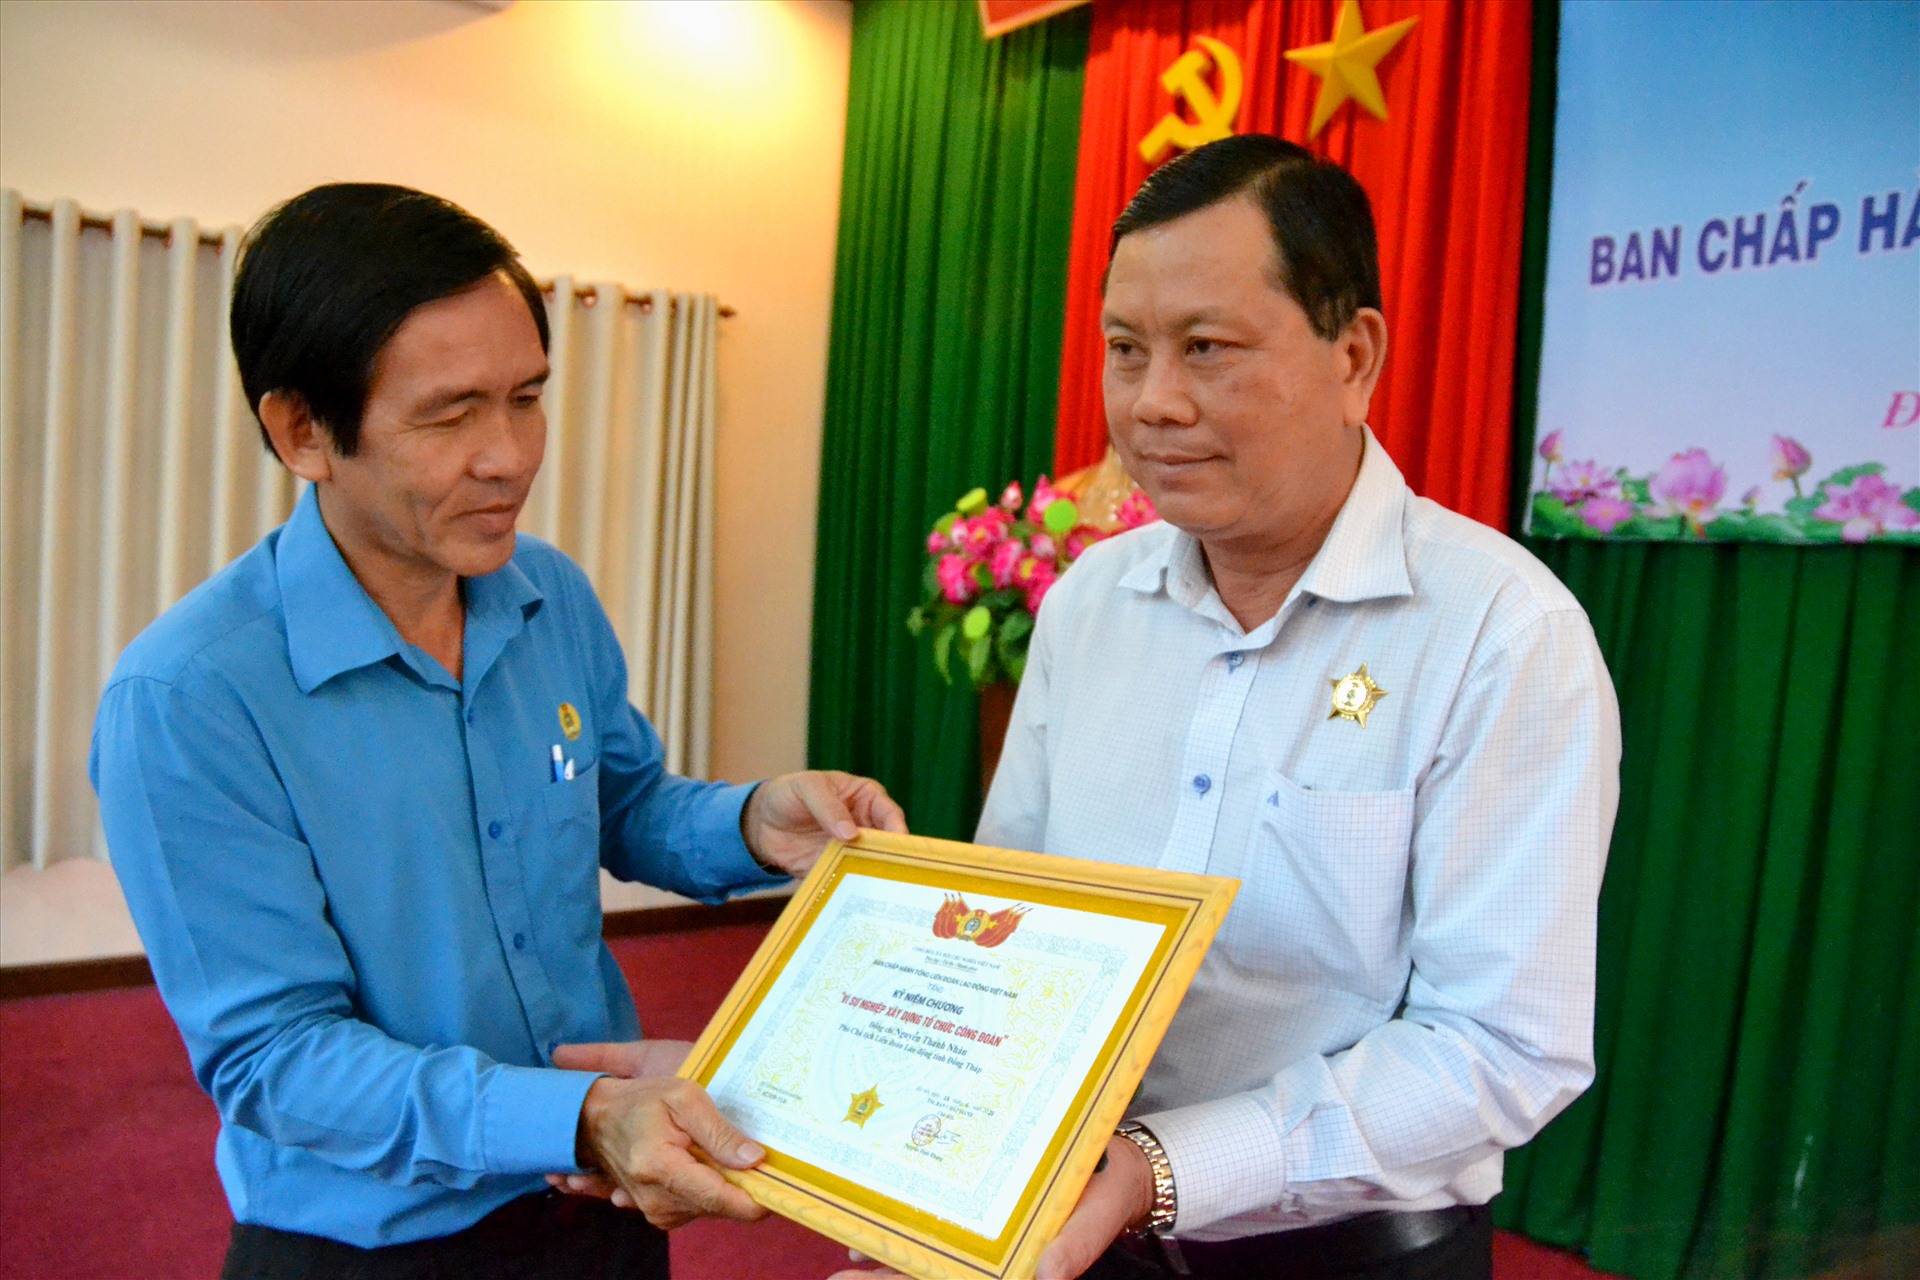 Ông Nguyễn Thanh Nhàn, phó Chủ tịch Thường trực LĐLĐ Đồng Tháp nhận kỷ niệm chương vì sự nghiệp tổ chức công đoàn. Ảnh: LT